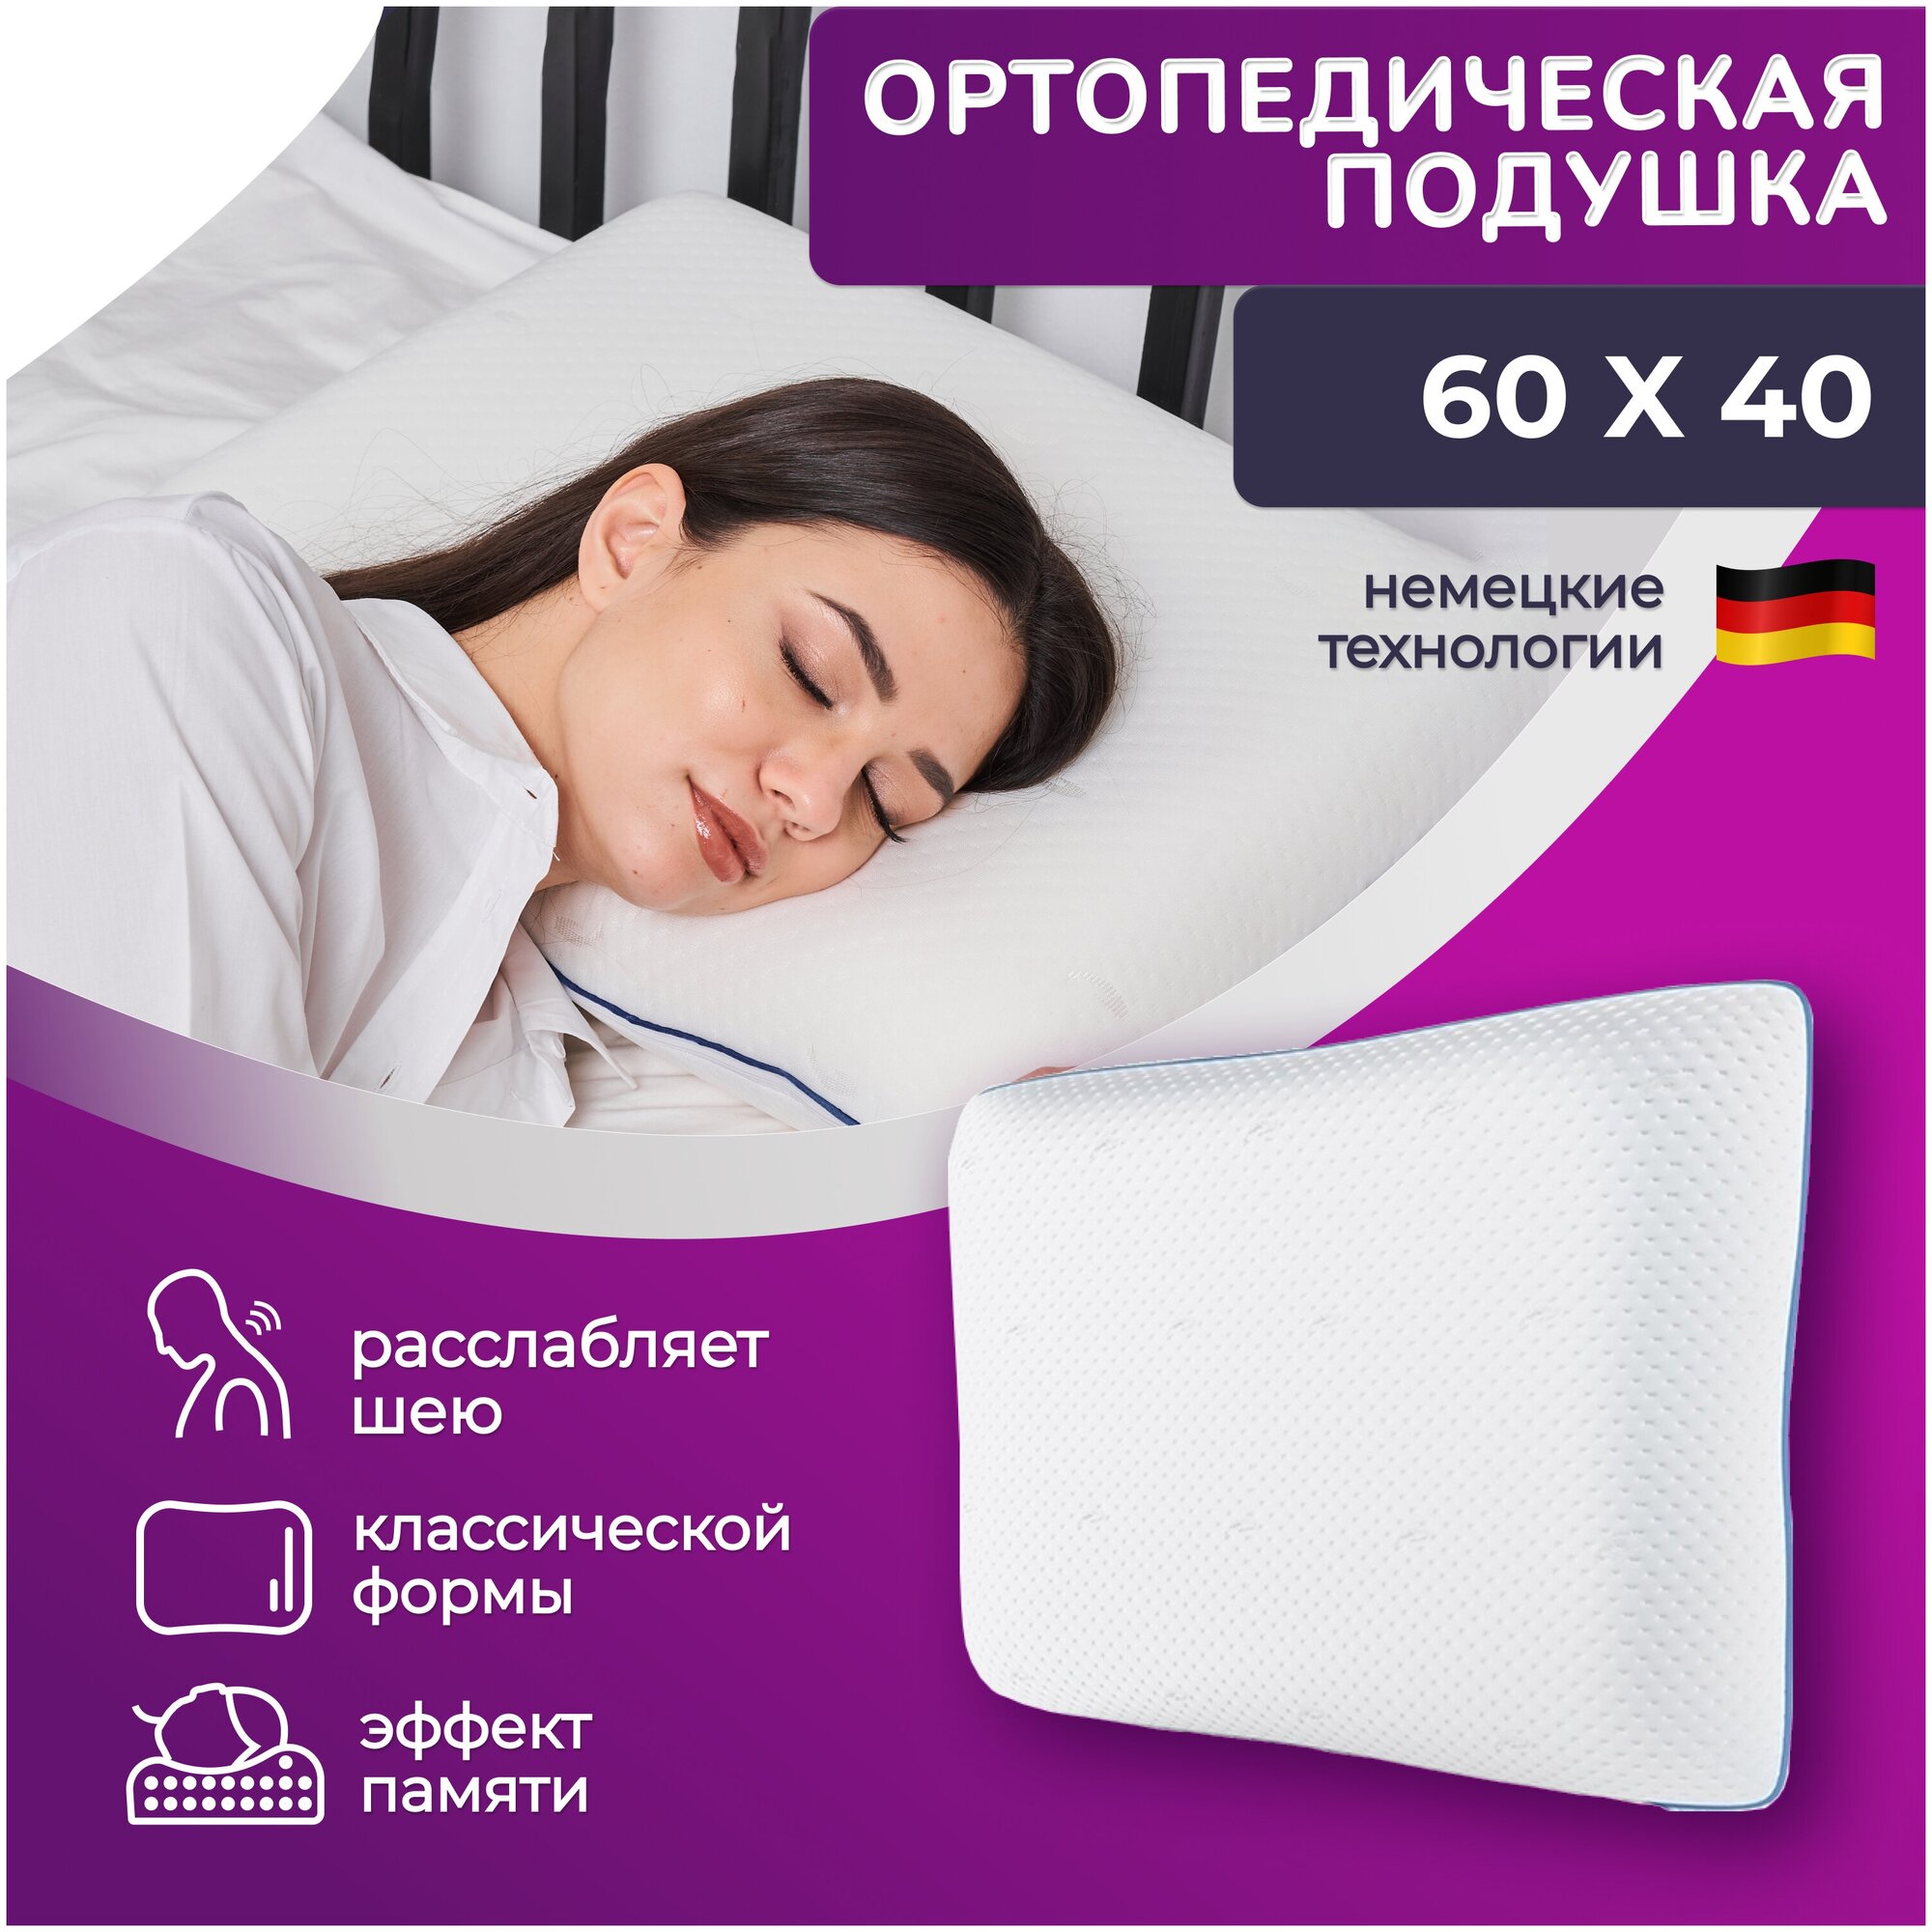 Подушка ортопедическая 60х40 для сна и шеи с эффектом памяти высотой 13 см - фотография № 1